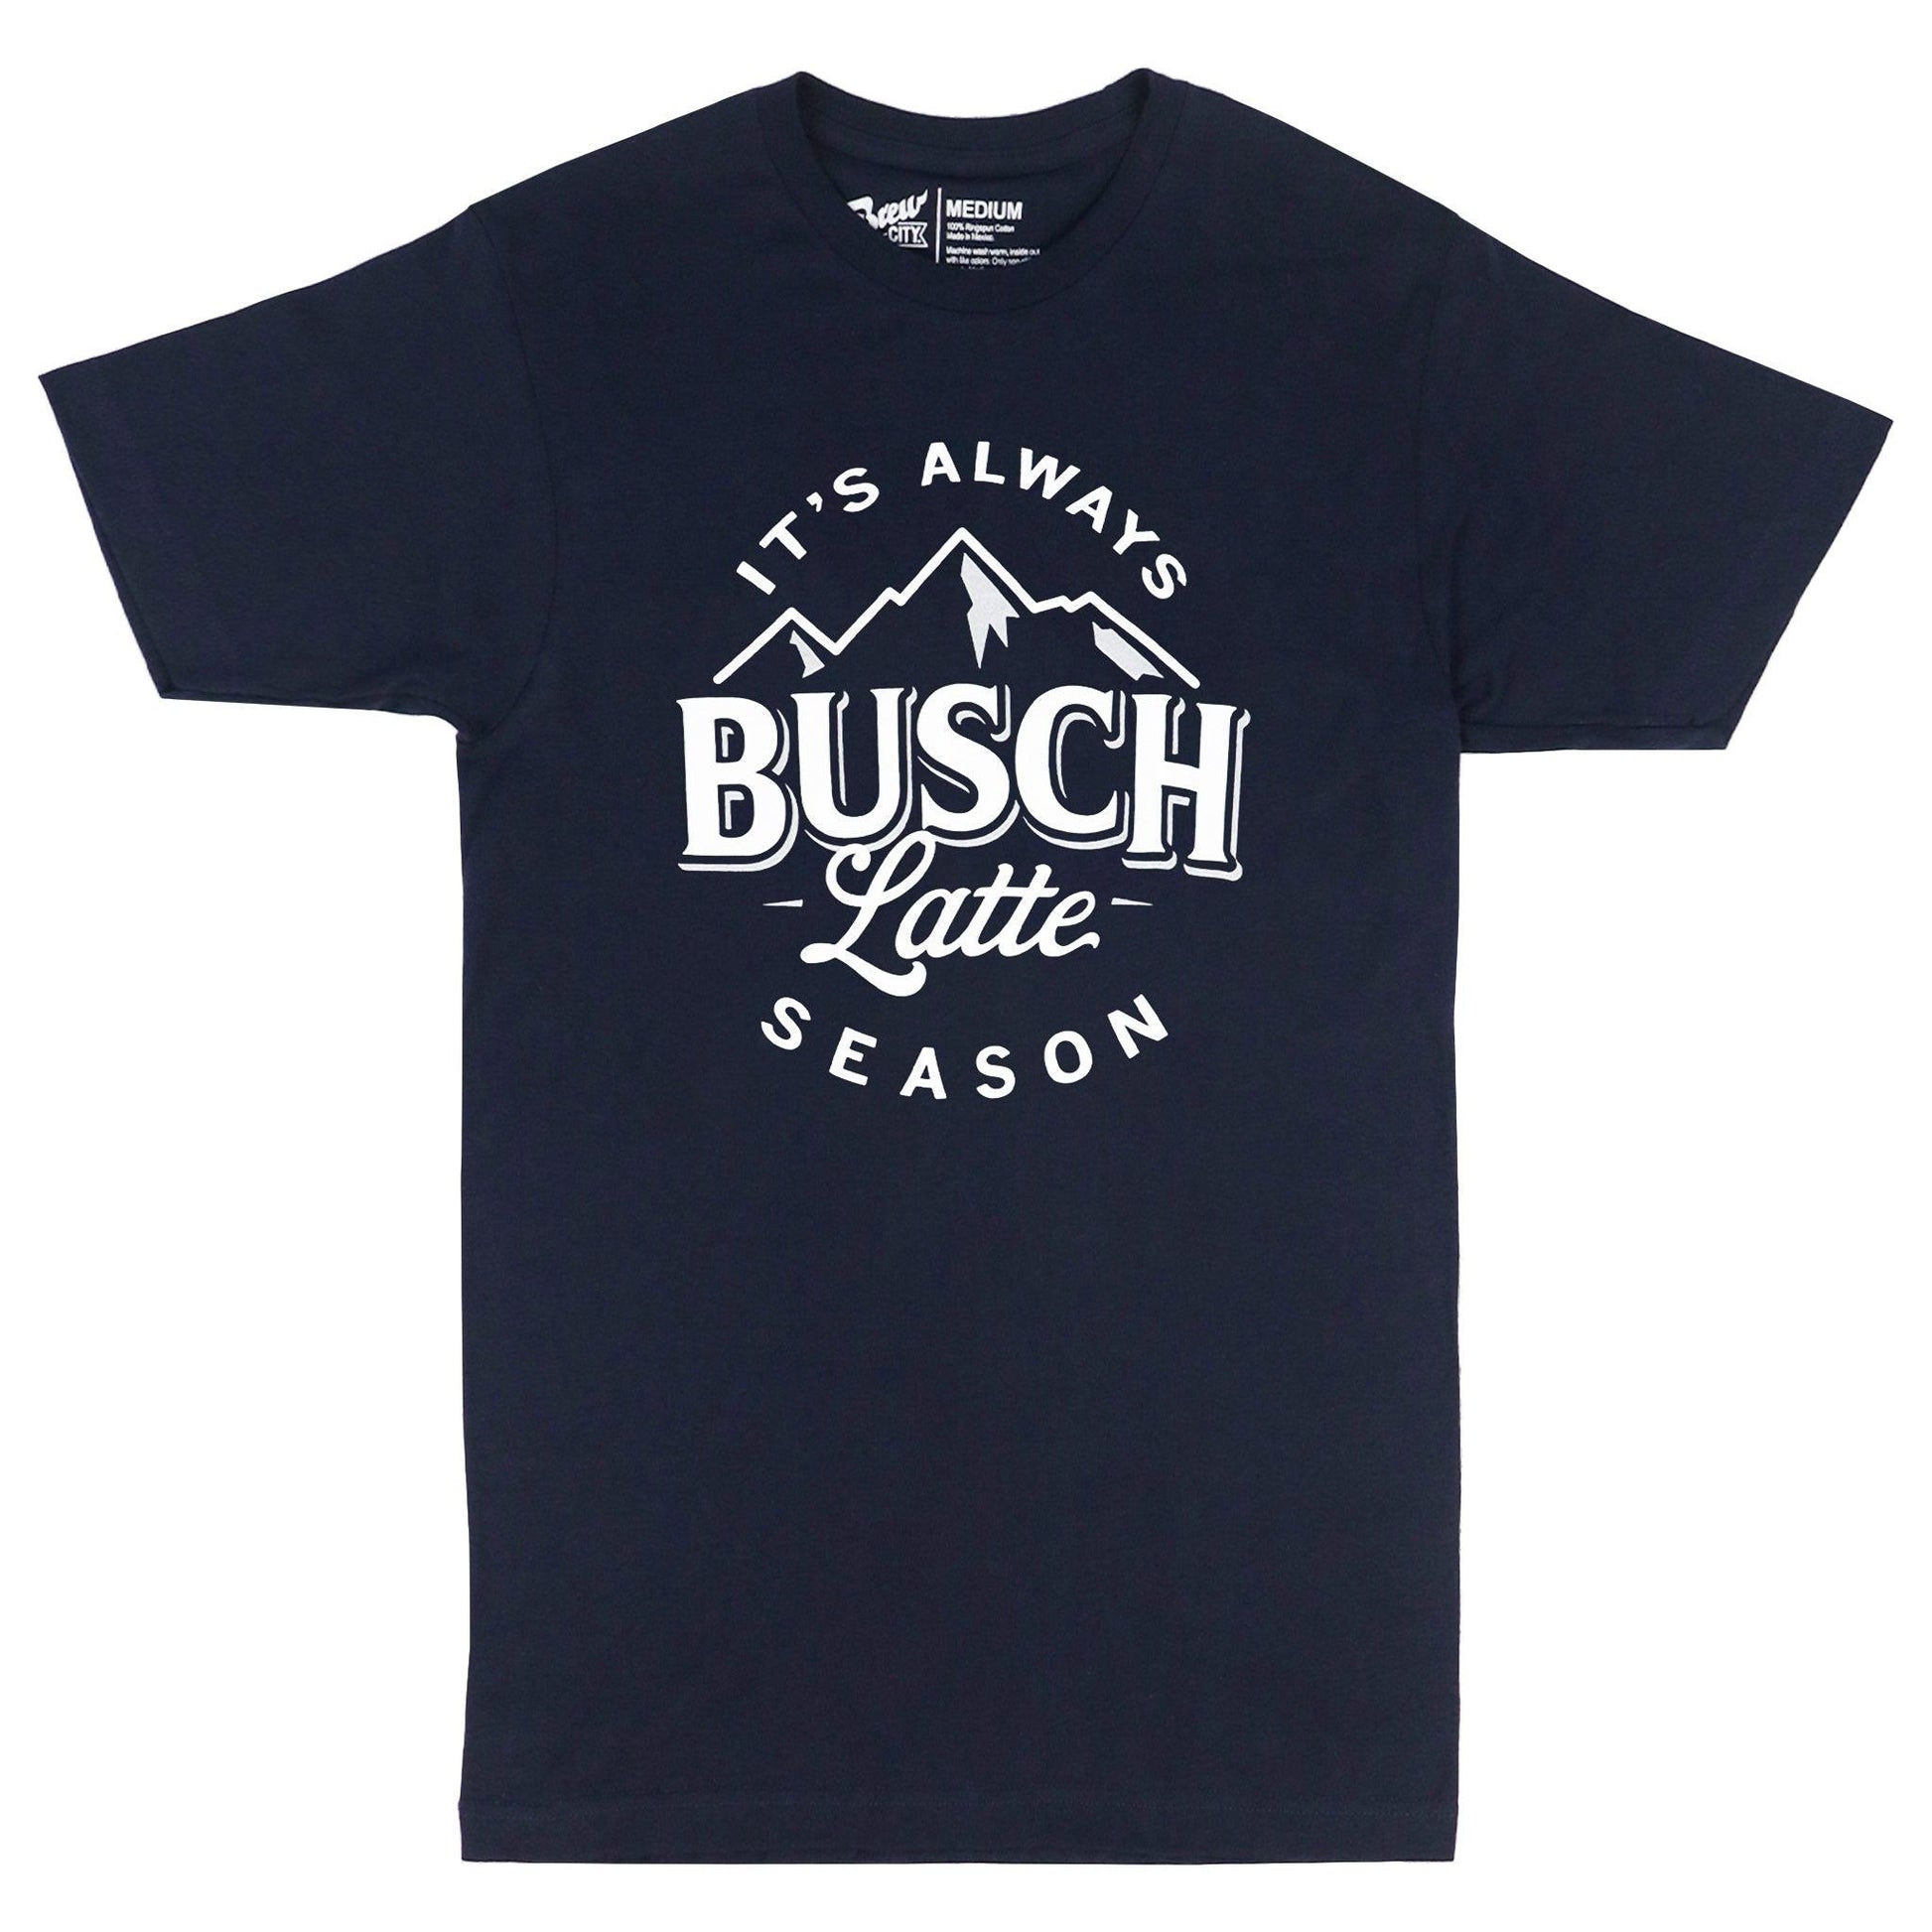 navy busch latte t shirt that says "it's always busch latte season"